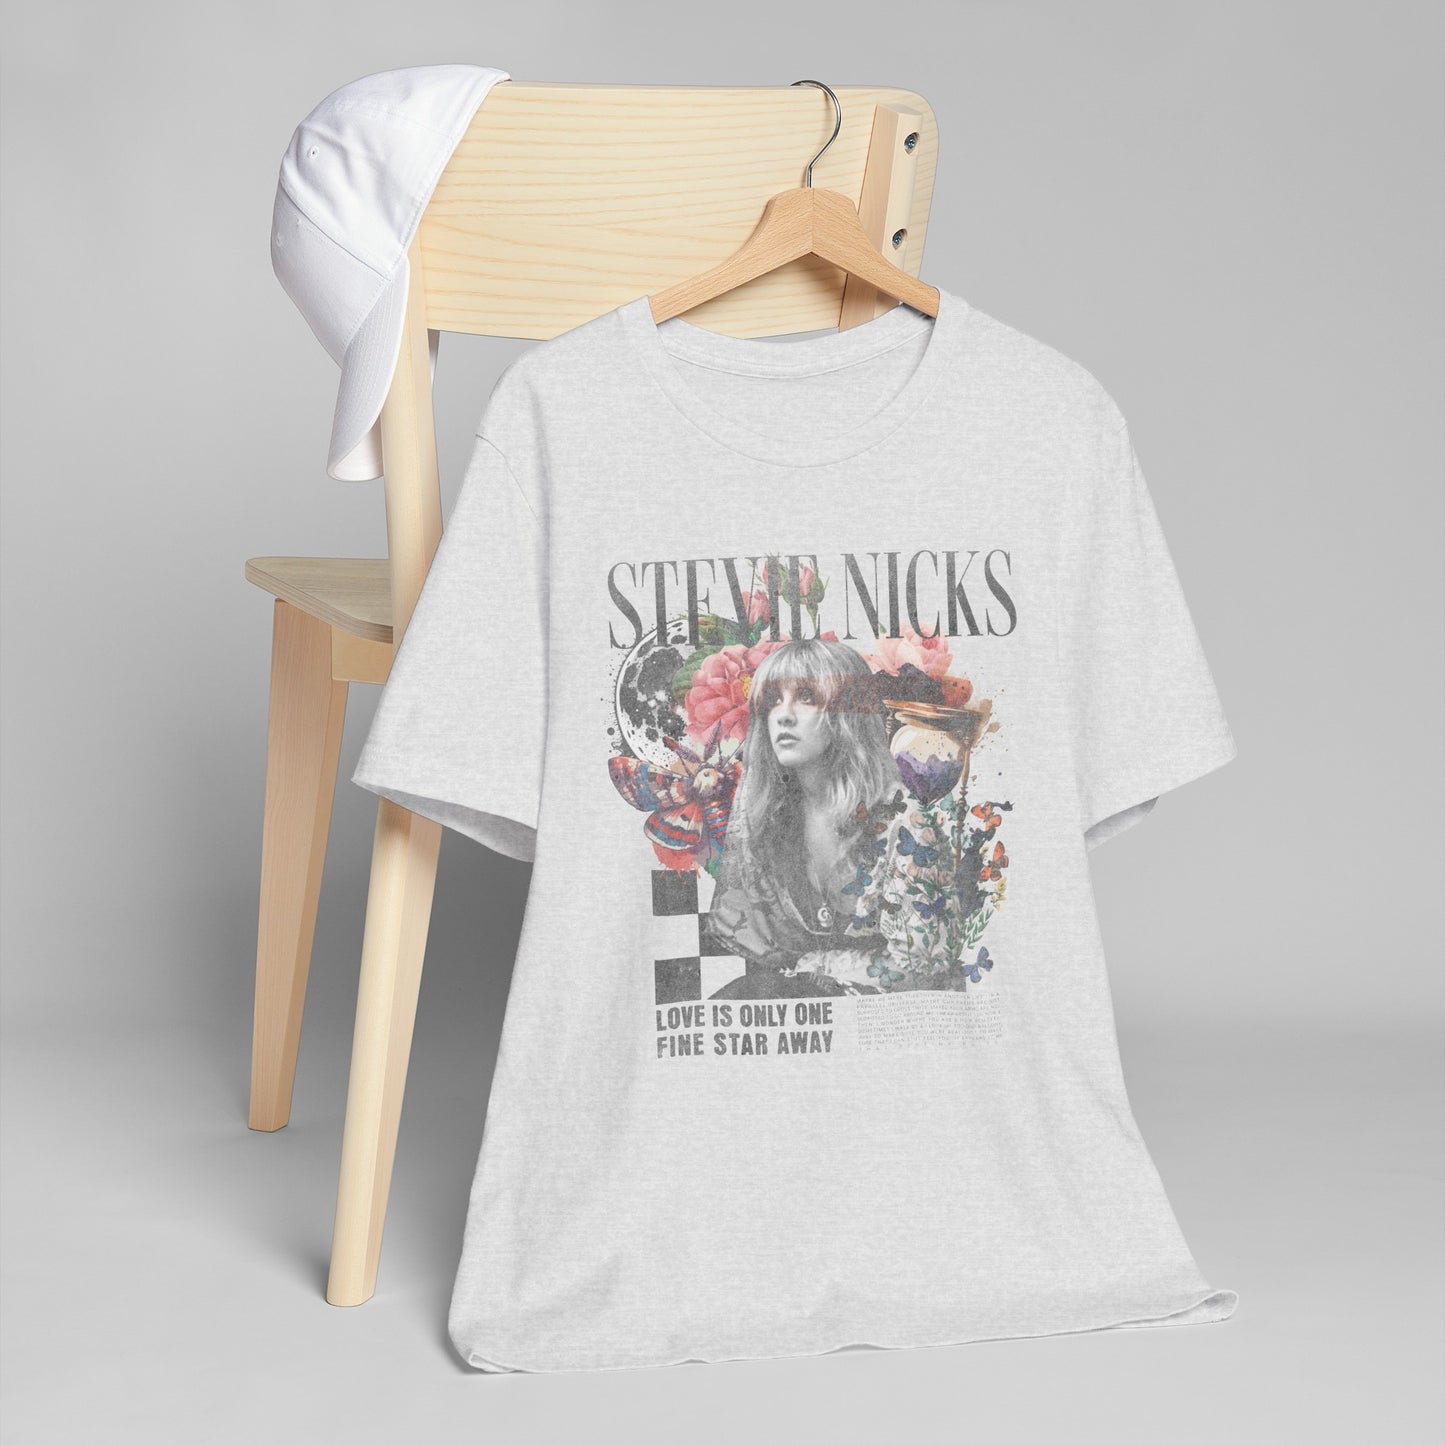 Stevie Nicks Unisex Jersey T-Shirt